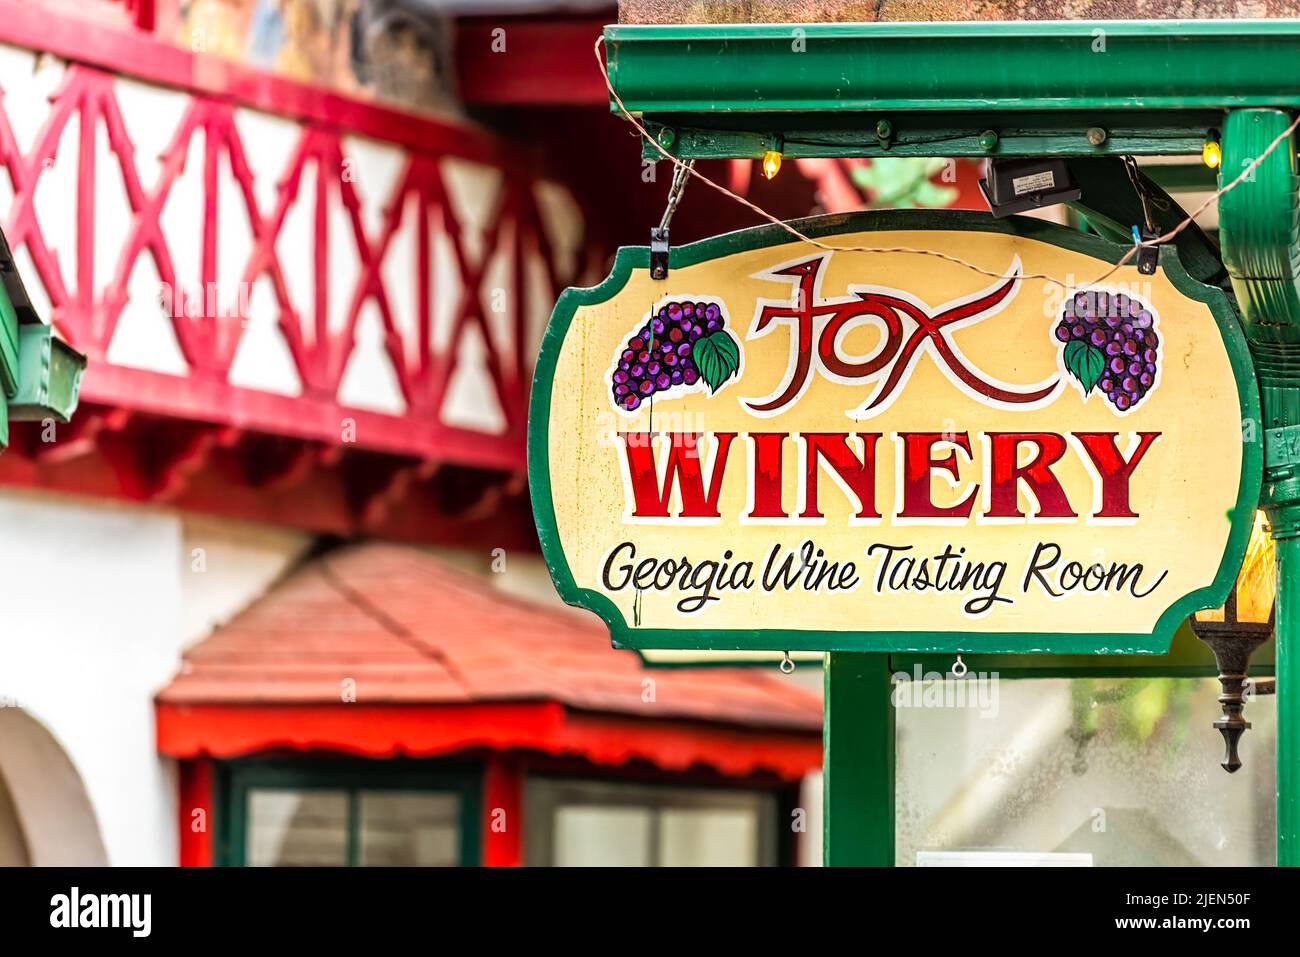 Helen, EE.UU. - 5 de octubre de 2021: Pueblo bávaro de Helen, Georgia con la arquitectura tradicional signo de construcción de colores para Fox Winery Wine Tasting Room Foto de stock